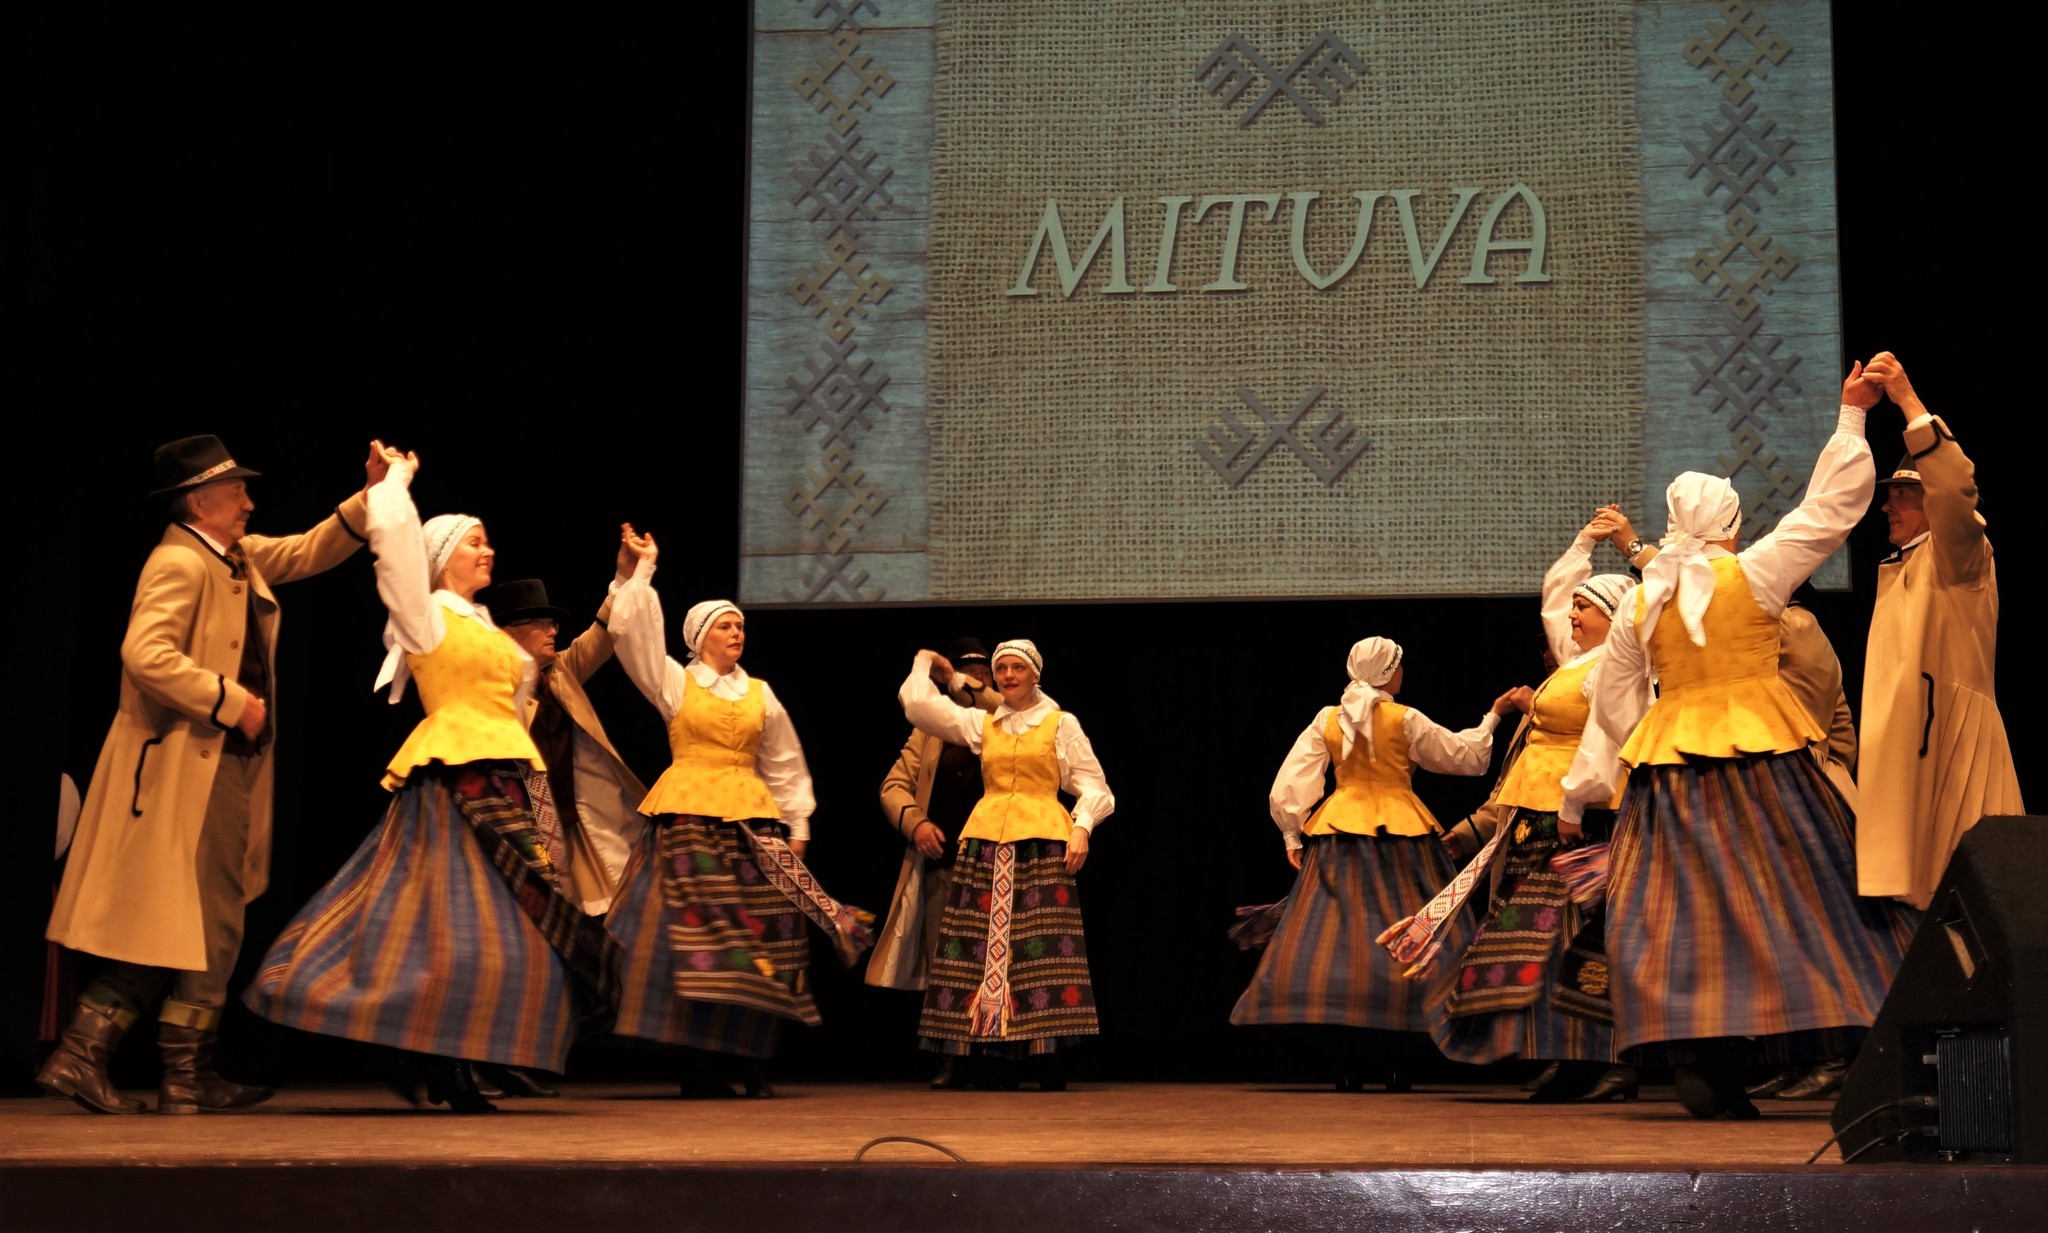 Vyresniųjų liaudiškų šokių grupė „Mituva“ savo šokius pristatė Kretingoje